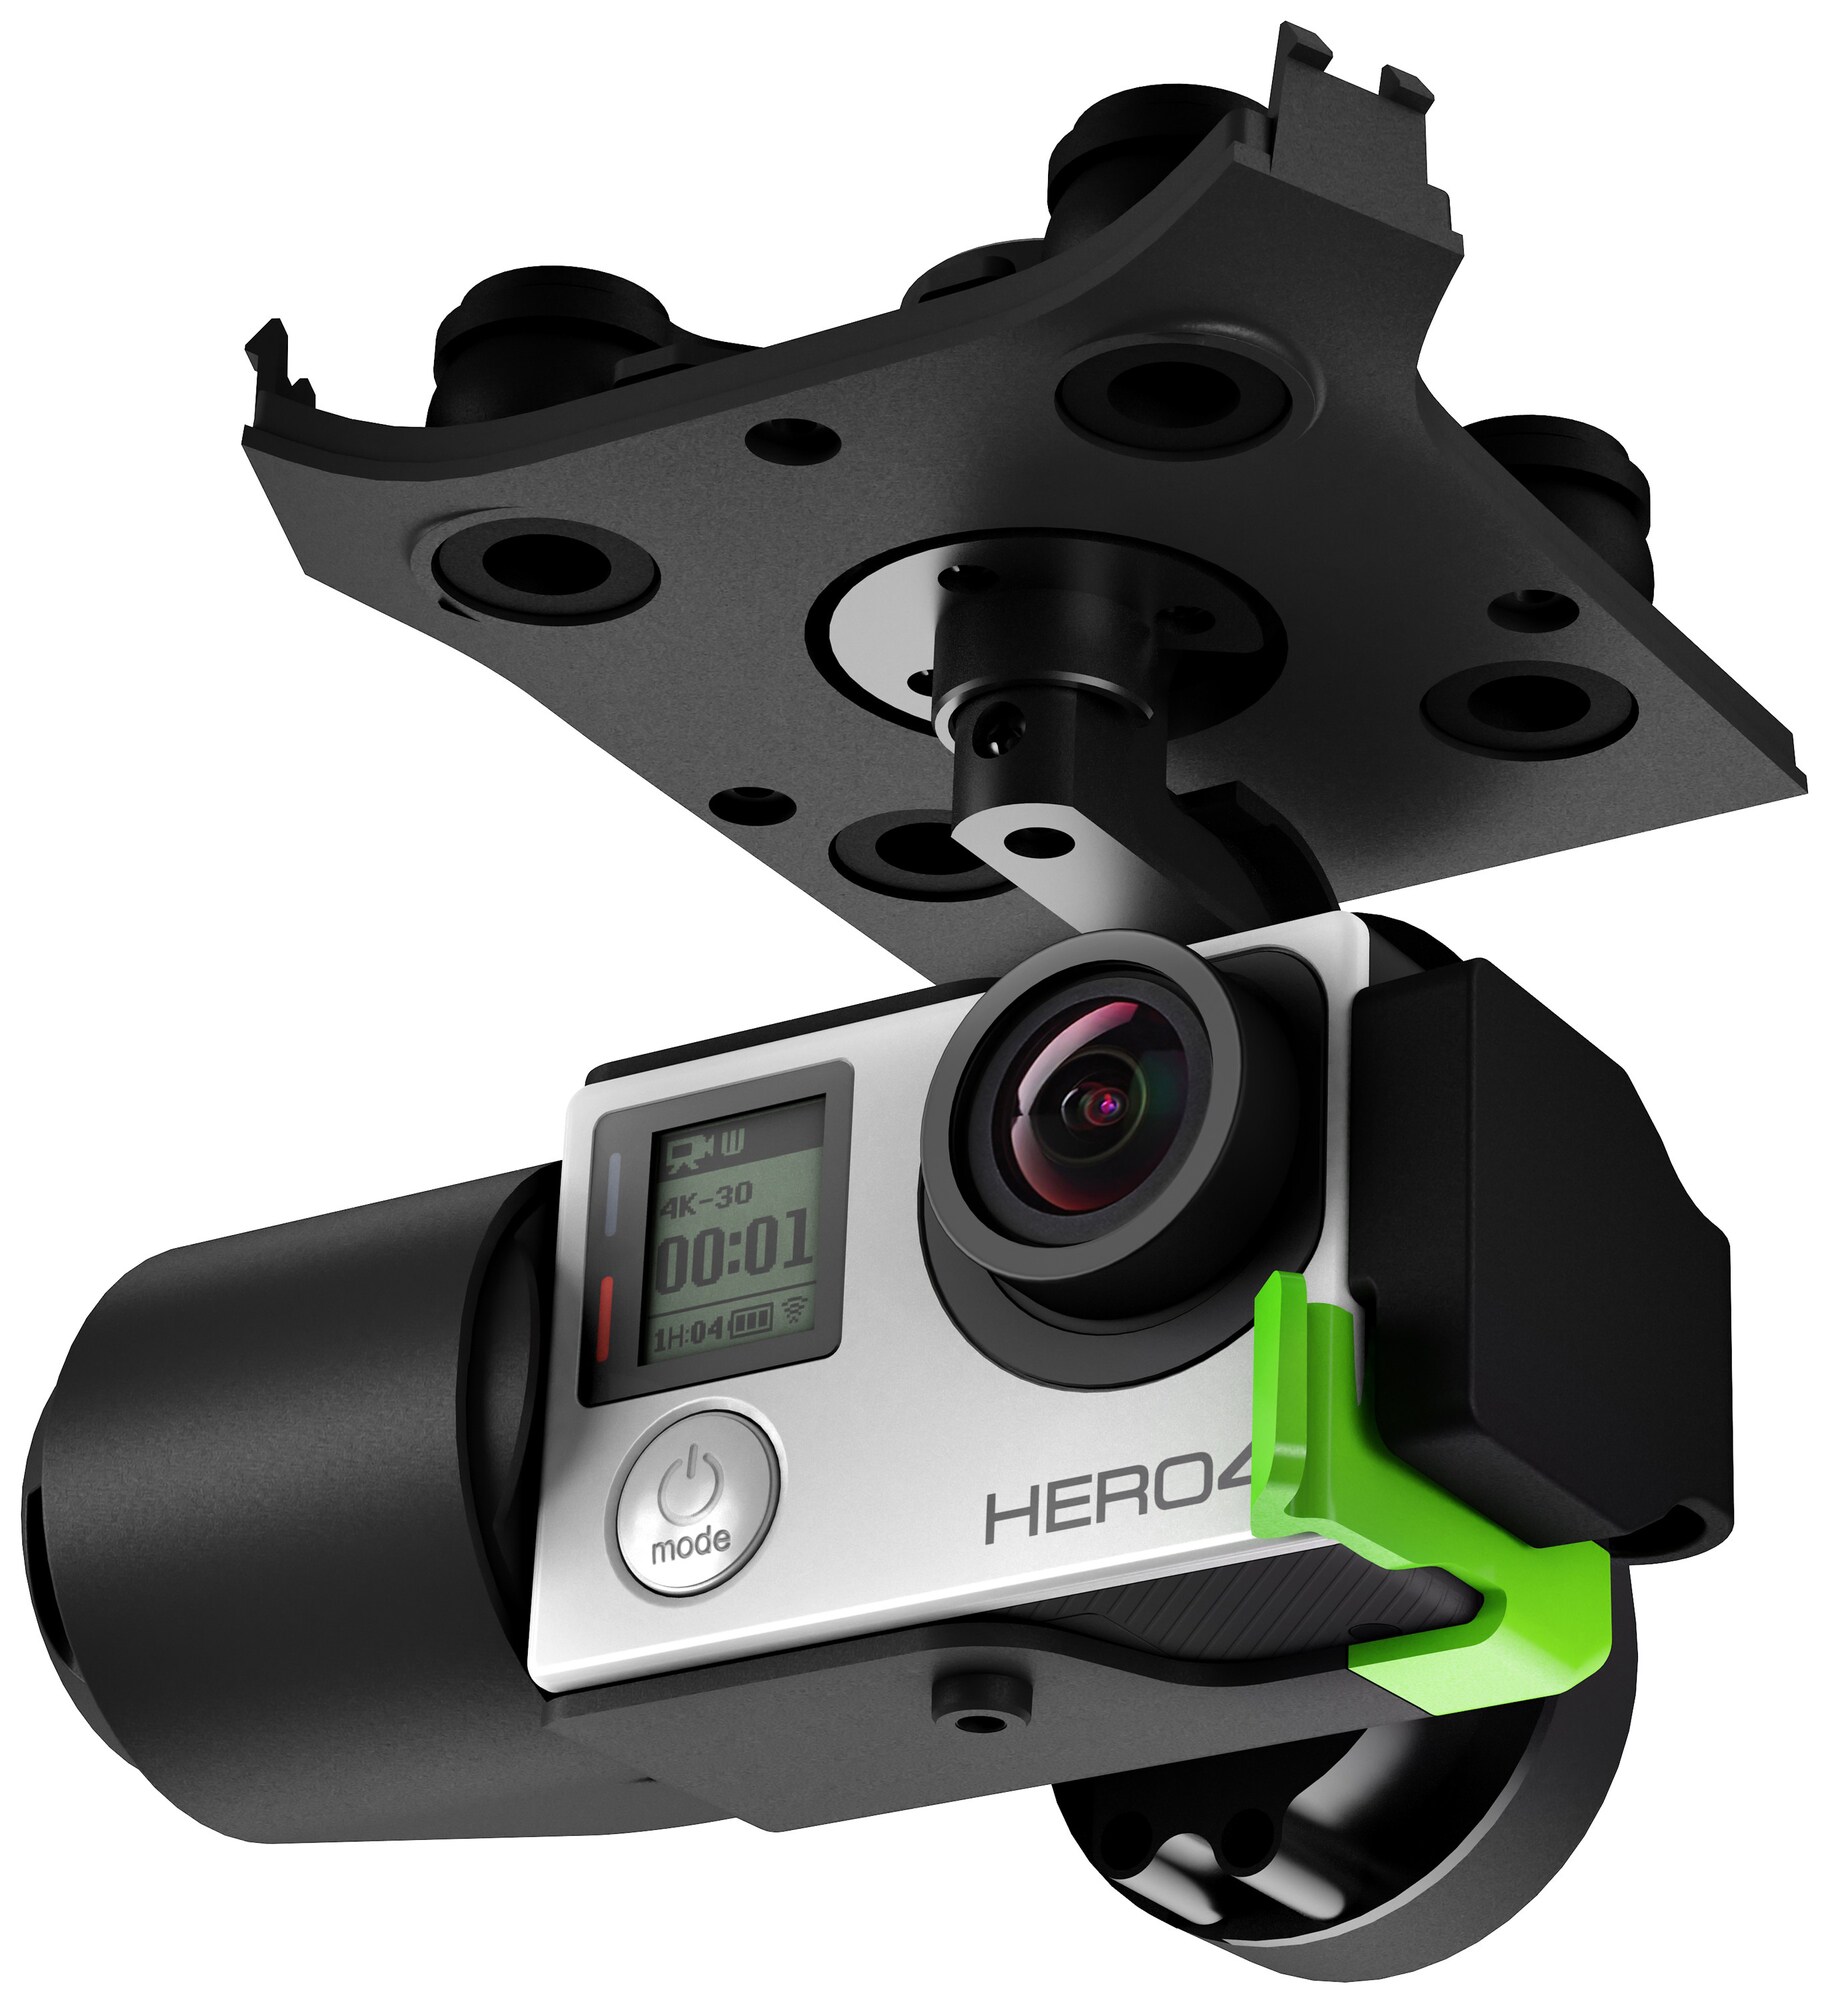 3DR Solo gimbal til GoPro Hero 4/3+ - Droner og tilbehør - Elkjøp